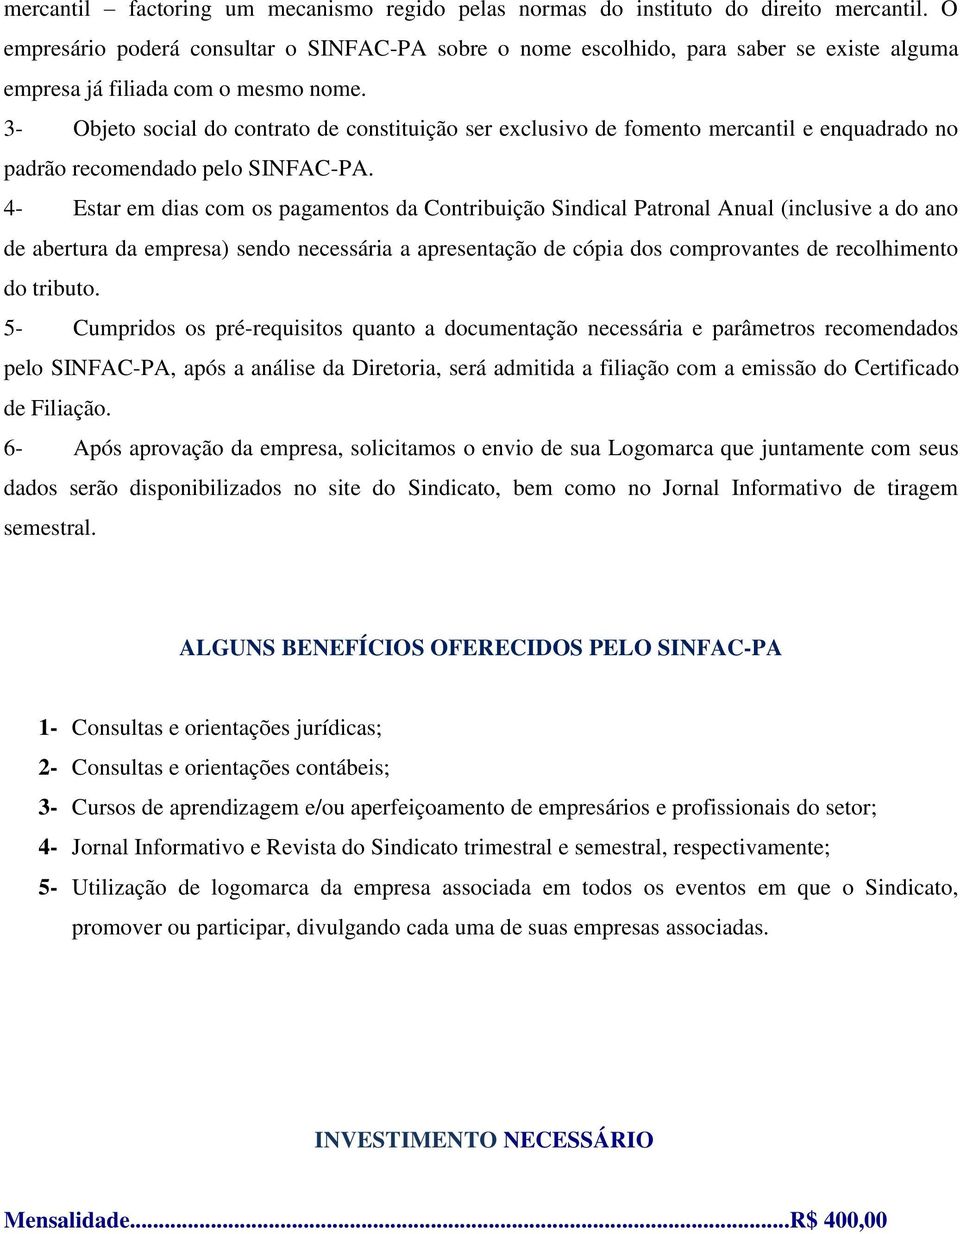 3- Objeto social do contrato de constituição ser exclusivo de fomento mercantil e enquadrado no padrão recomendado pelo SINFAC-PA.